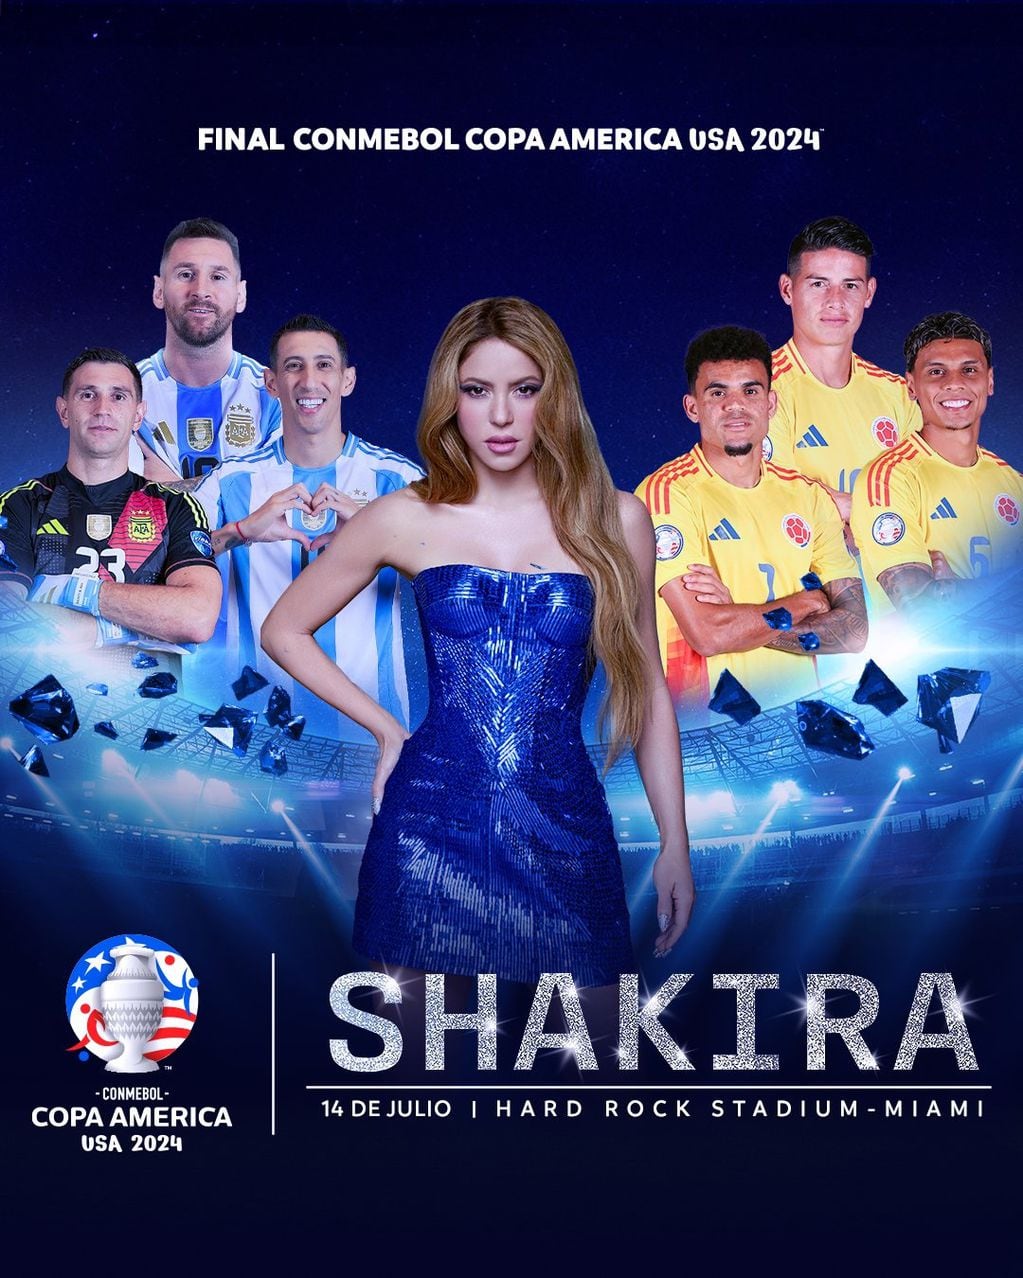 Shakira, la estrella de la final de la Copa América 2024 (Conmebol)